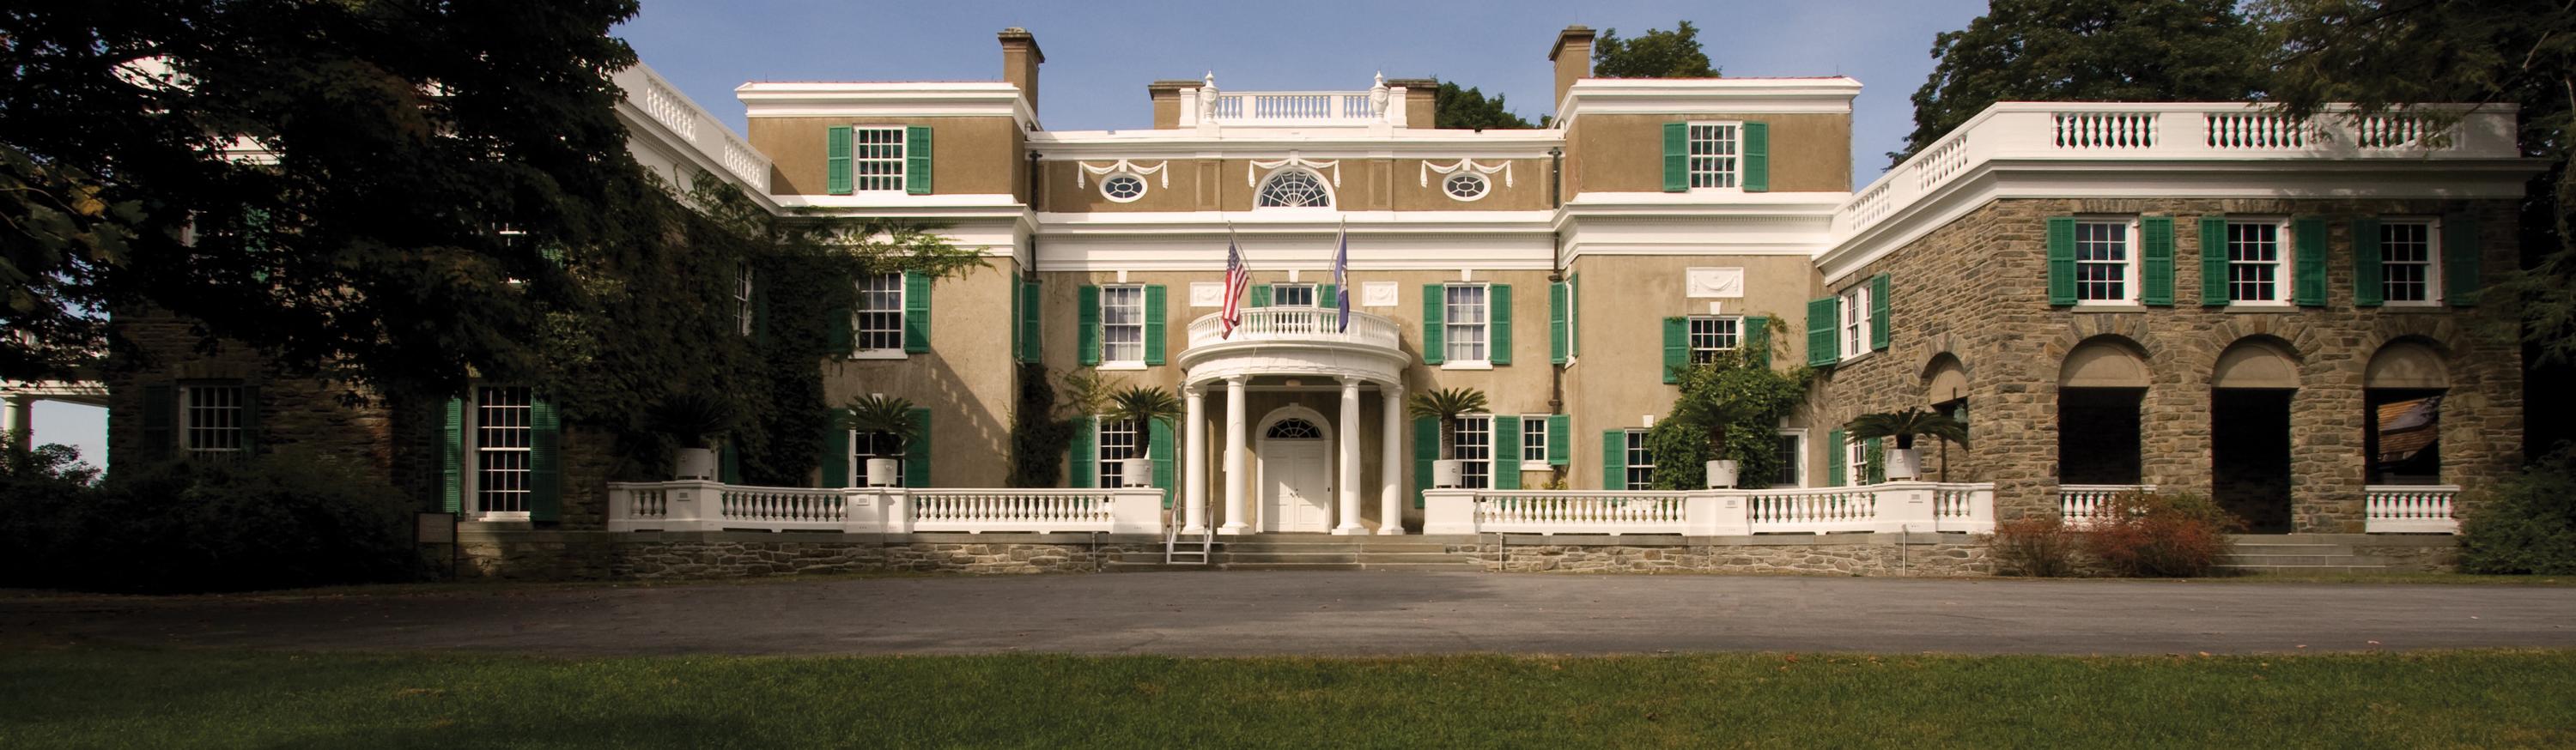 Home Of Franklin D Roosevelt National Historic Site (U.S. National ...